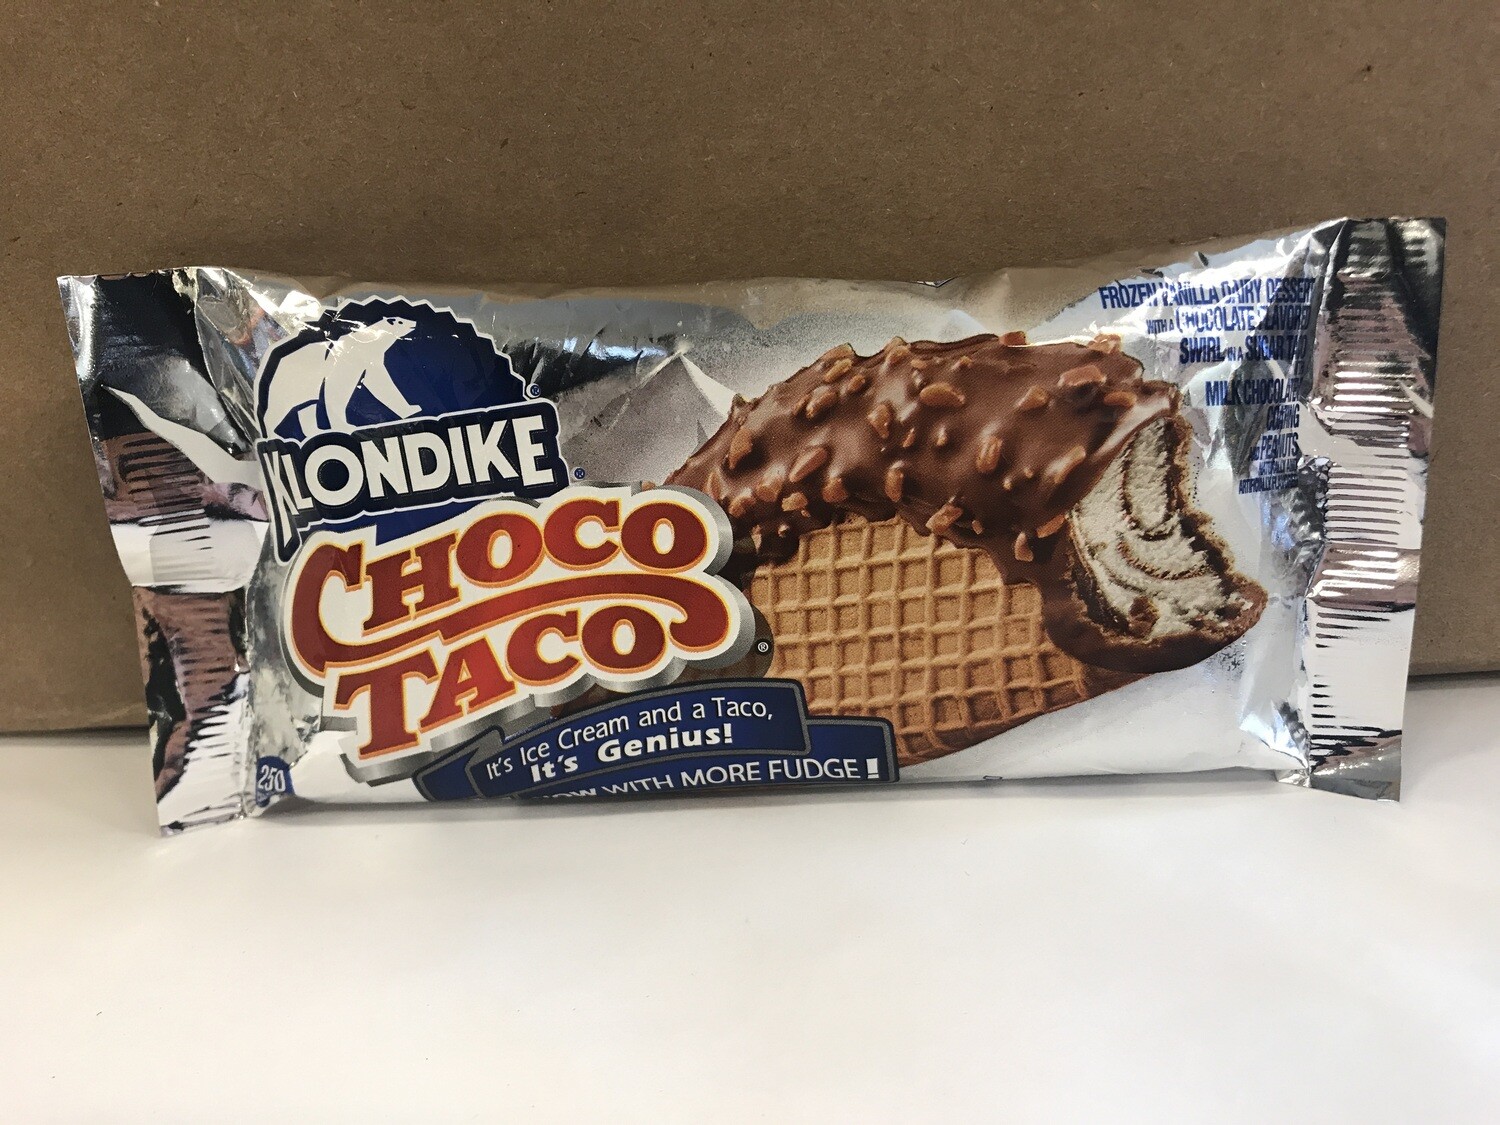 Frozen / Ice Cream Novelty / Choco Taco